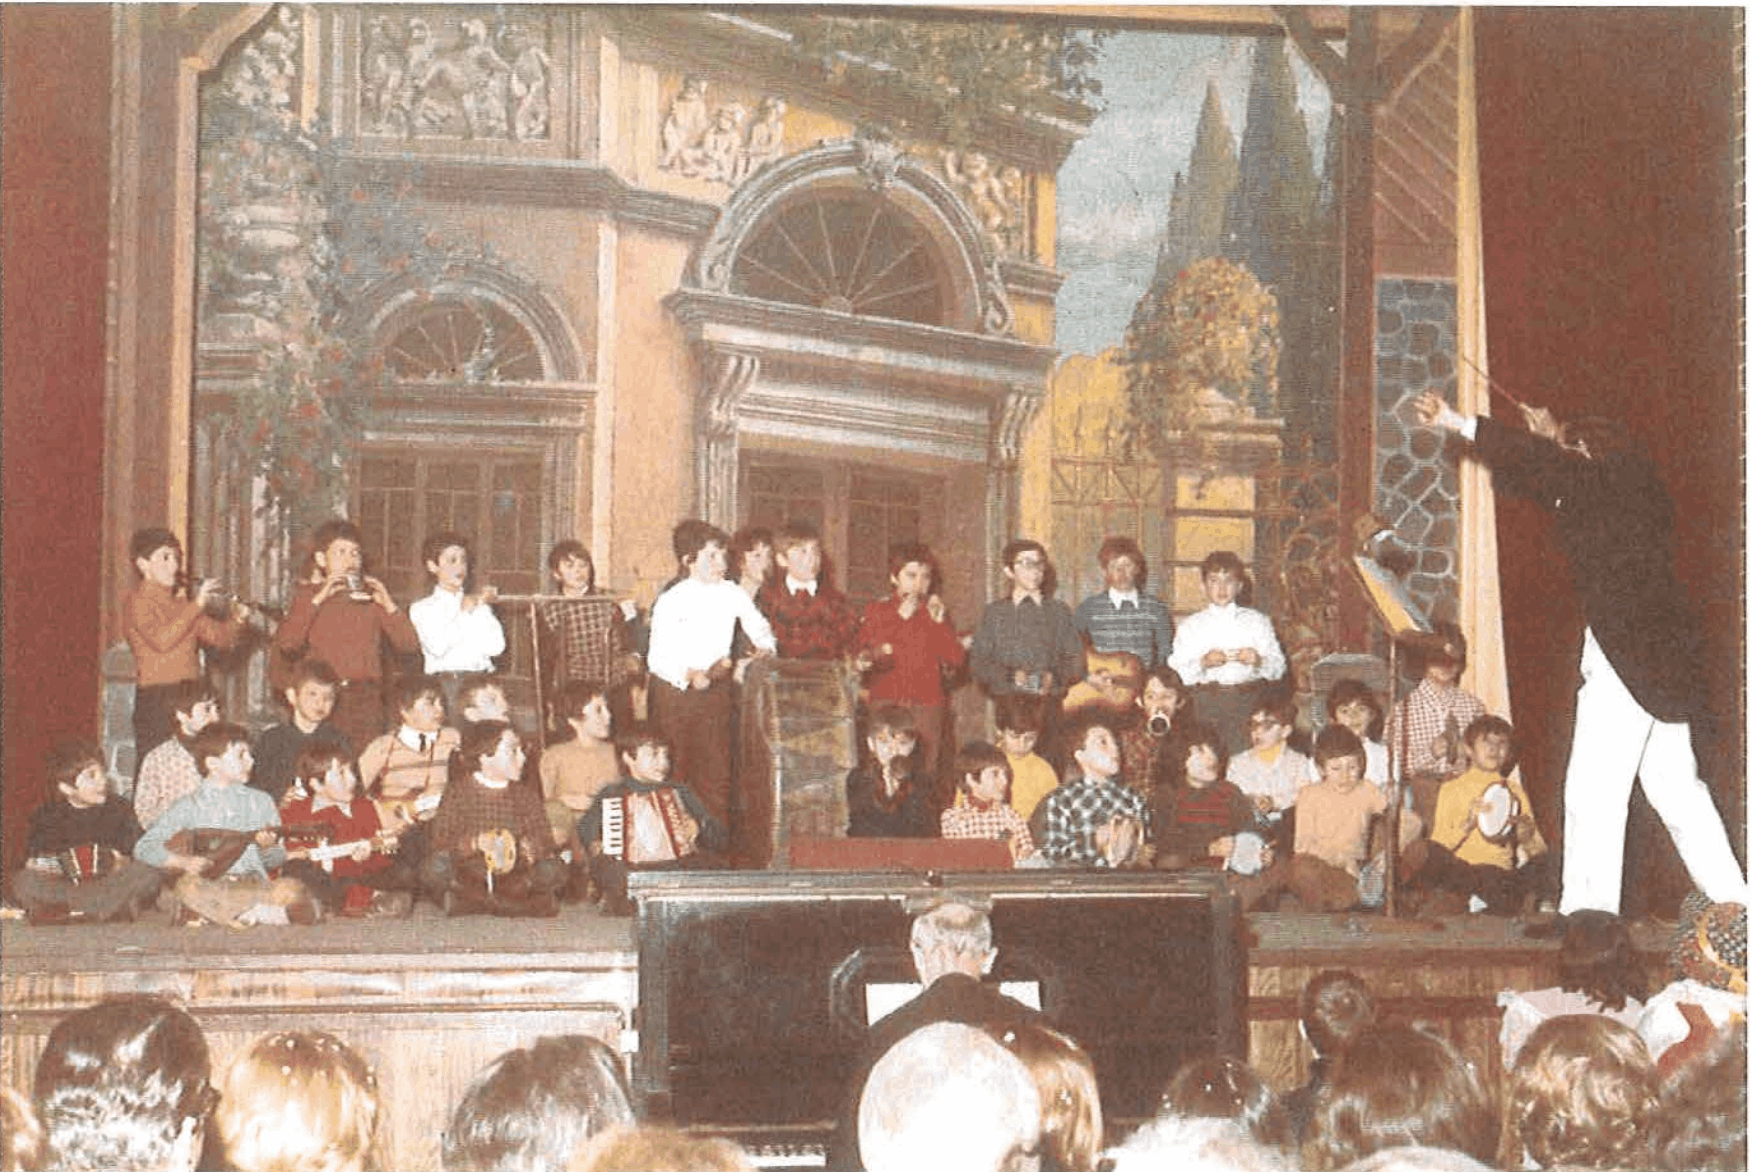 Carnevale 1974 - Il Coro de "L'orchestra delle scale"